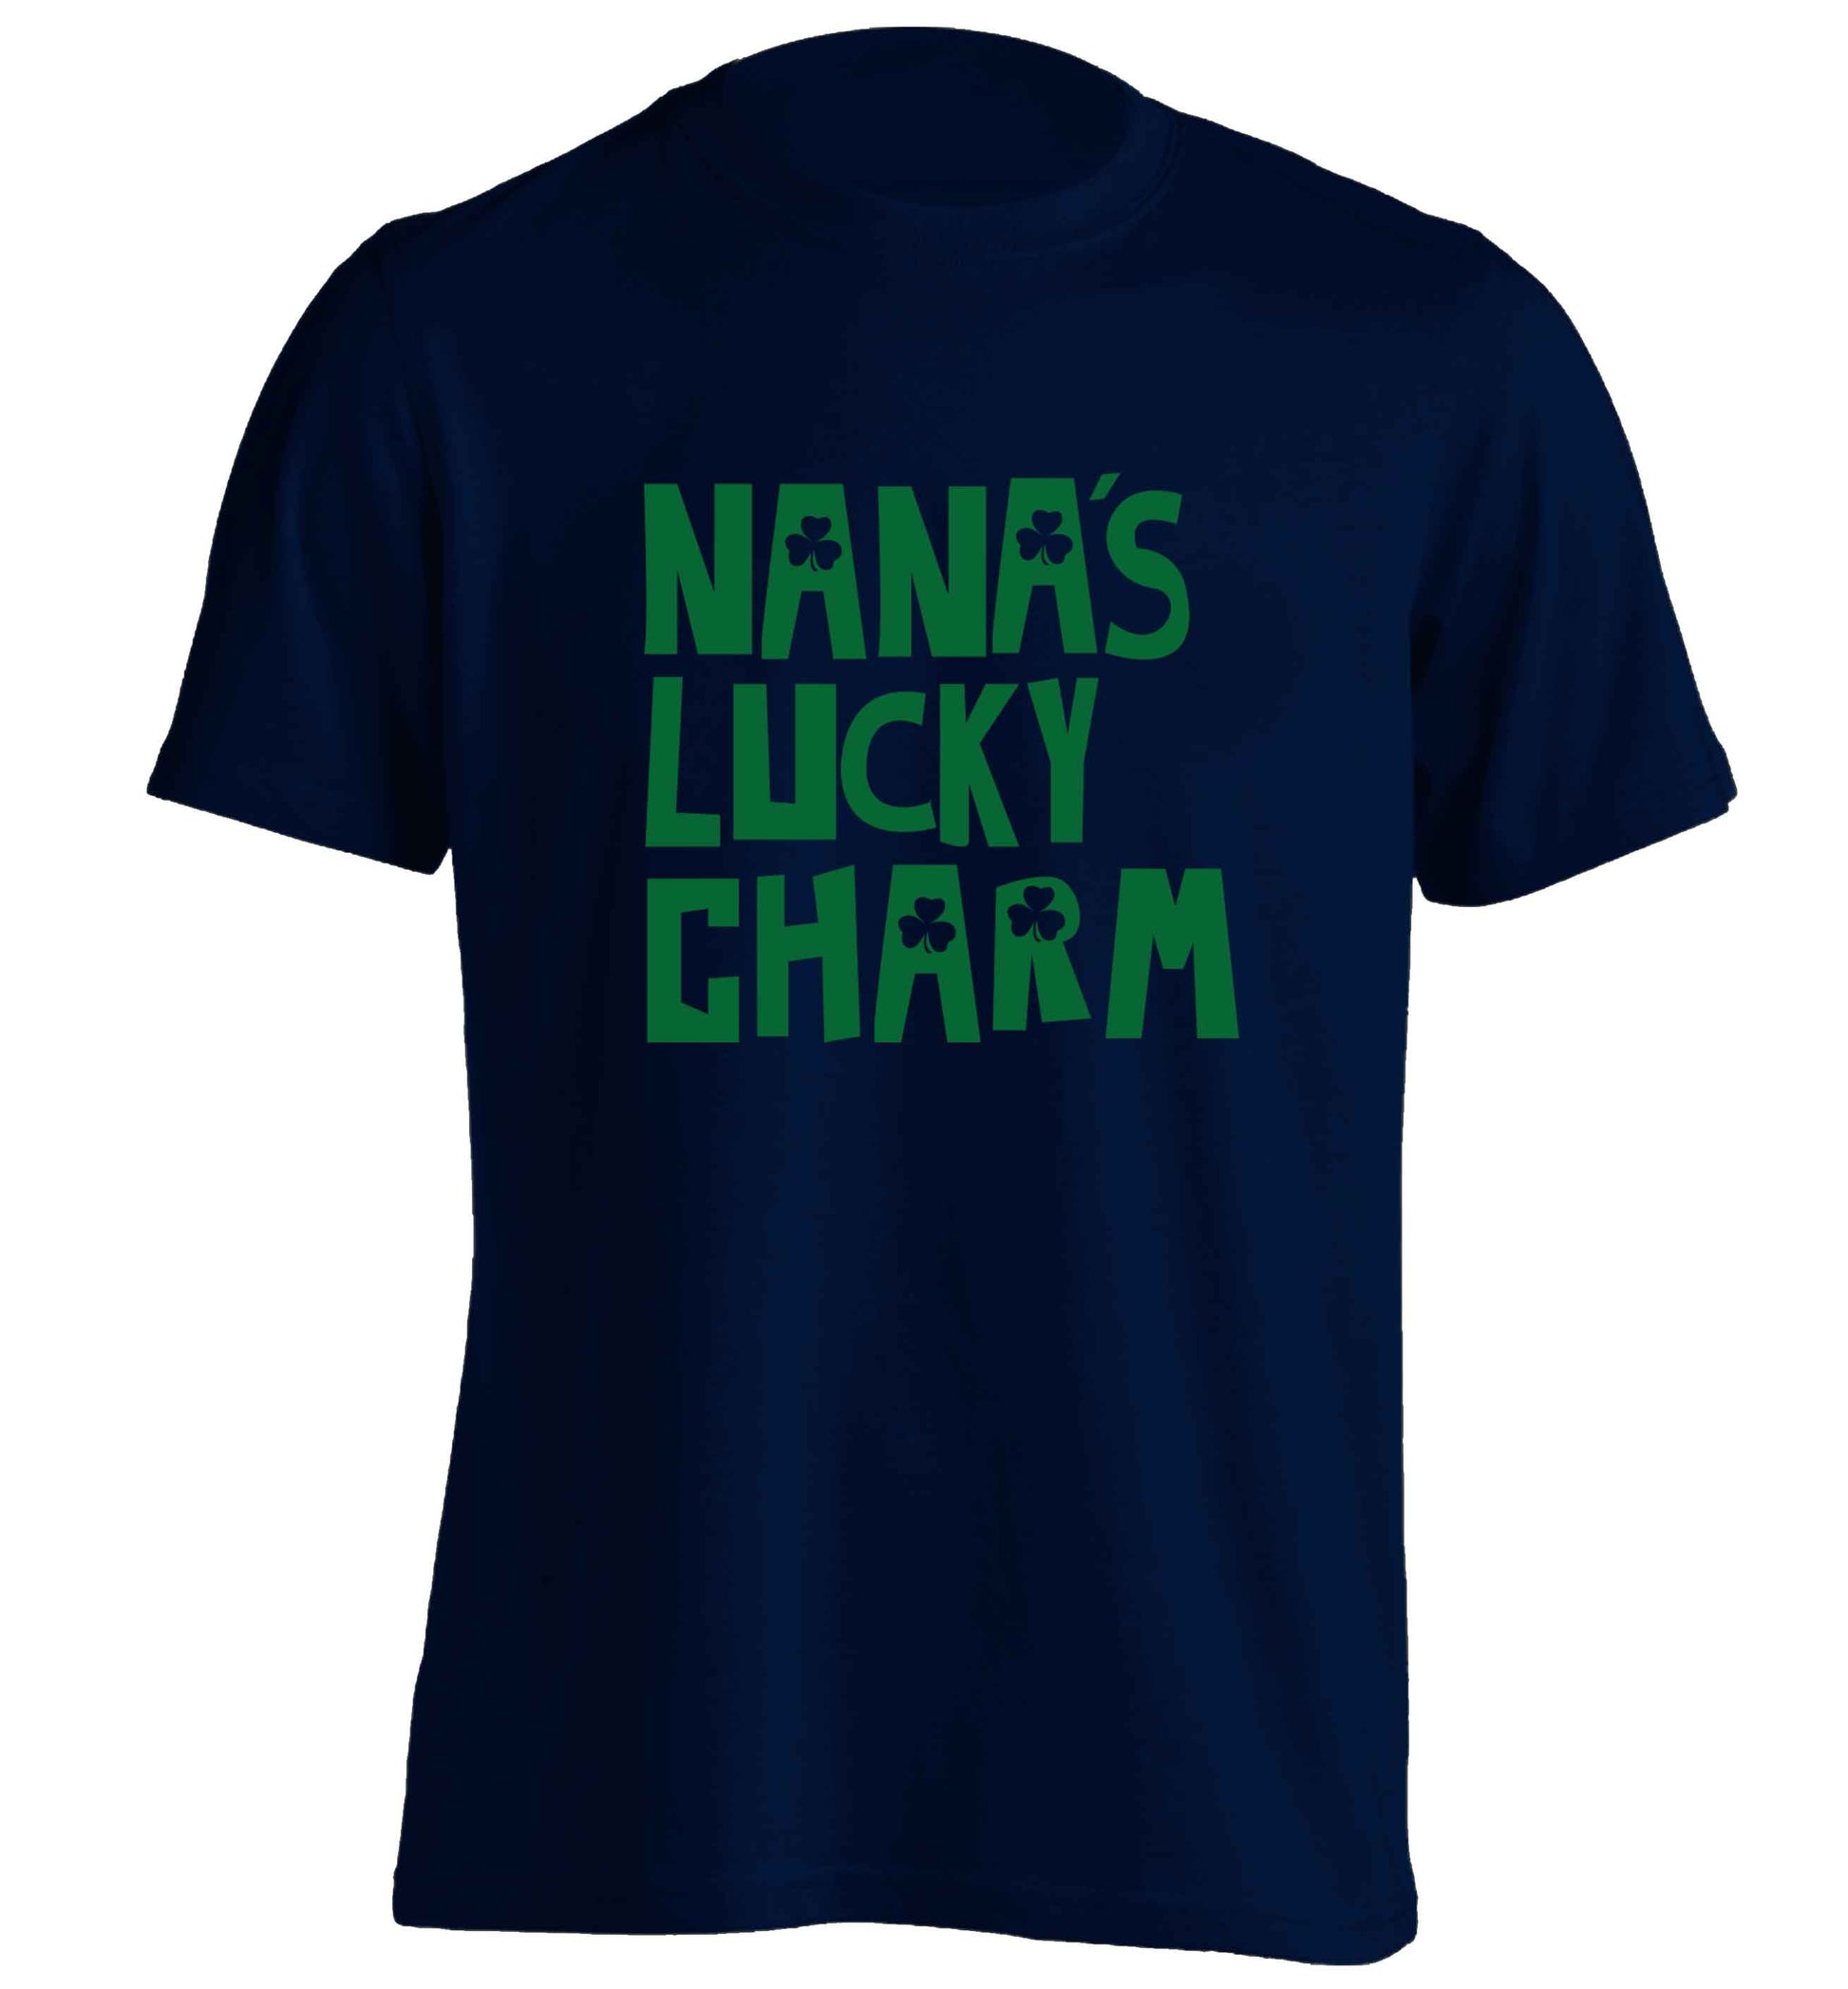 Nana's lucky charm adults unisex navy Tshirt 2XL